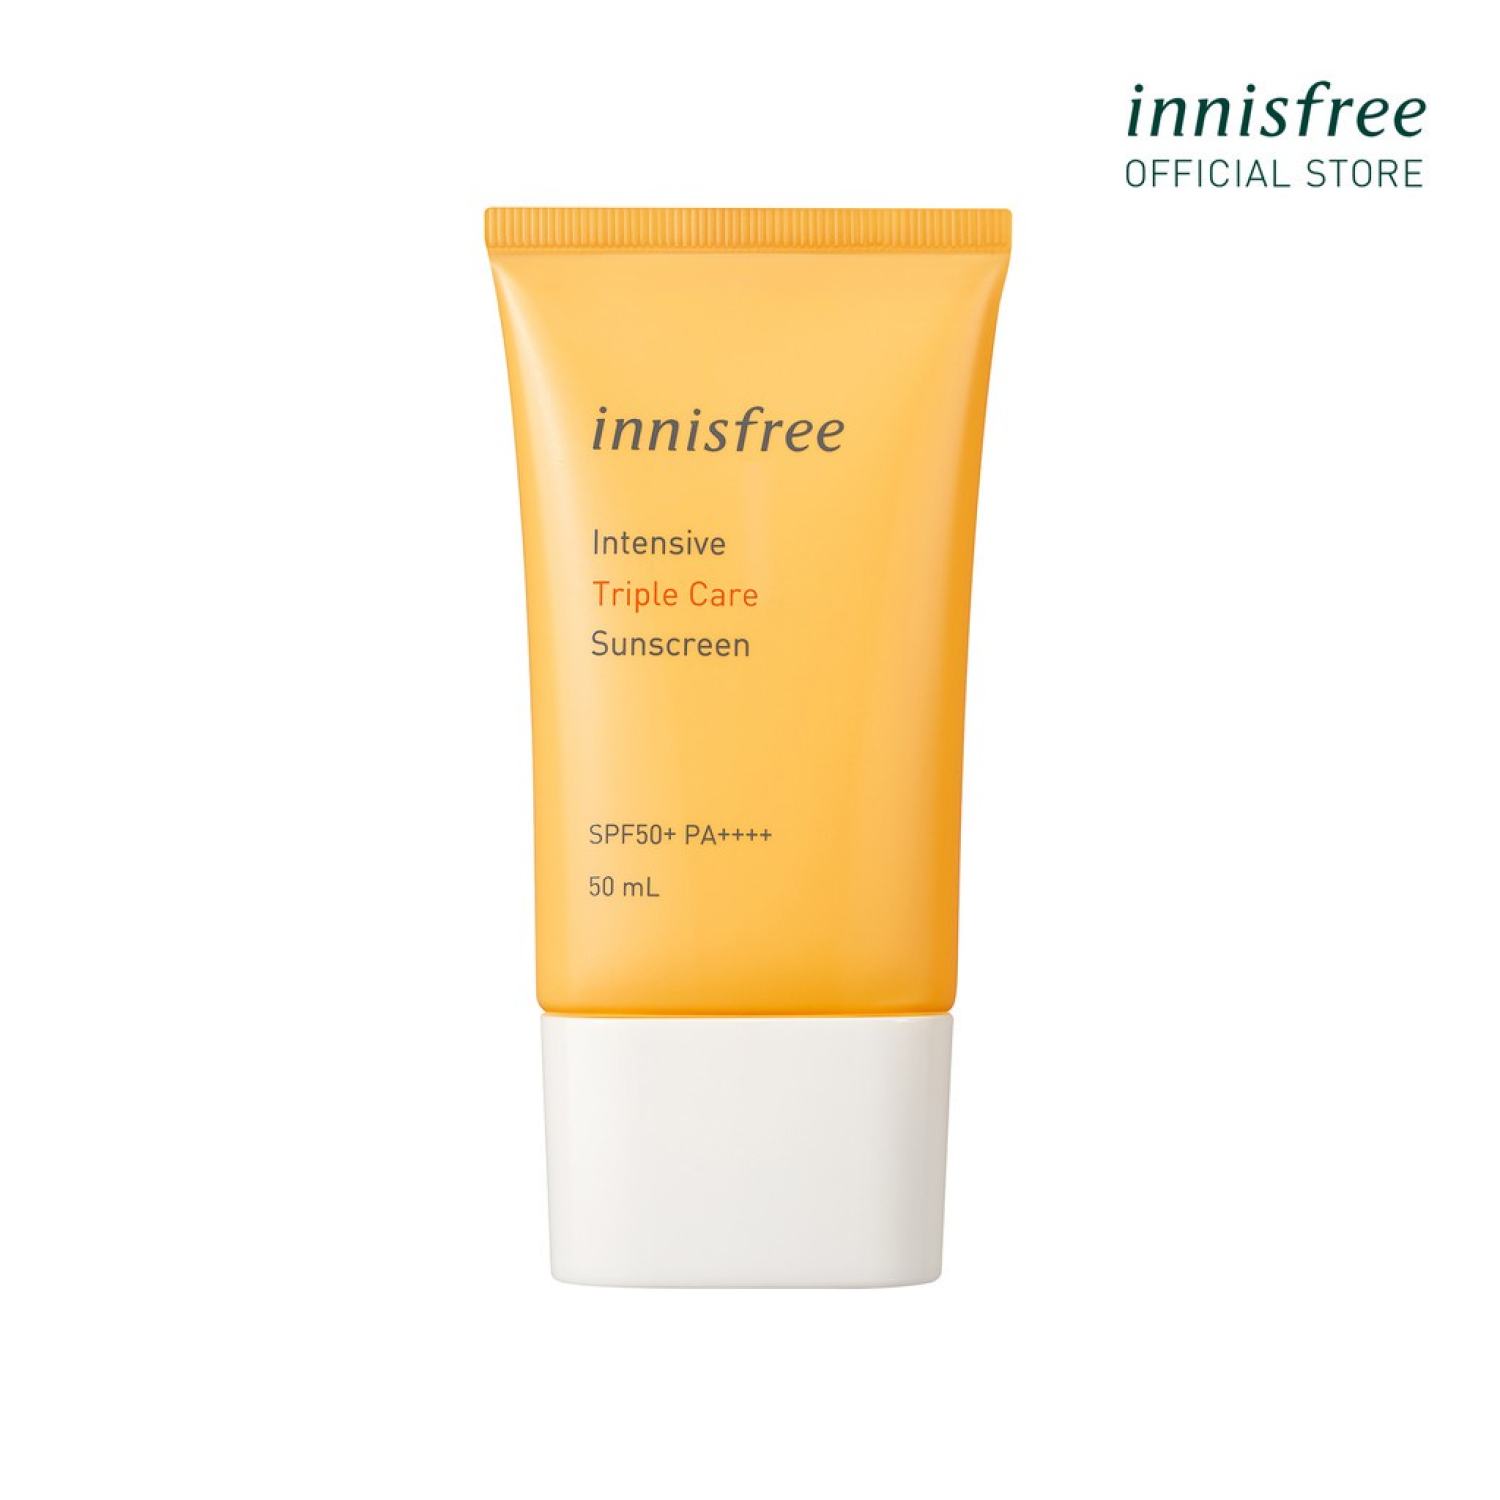 Kem chống nắng lâu trôi làm sáng da innisfree Intensive Triple Care Sunscreen SPF50+ Pa++++ (50ml) nhập khẩu